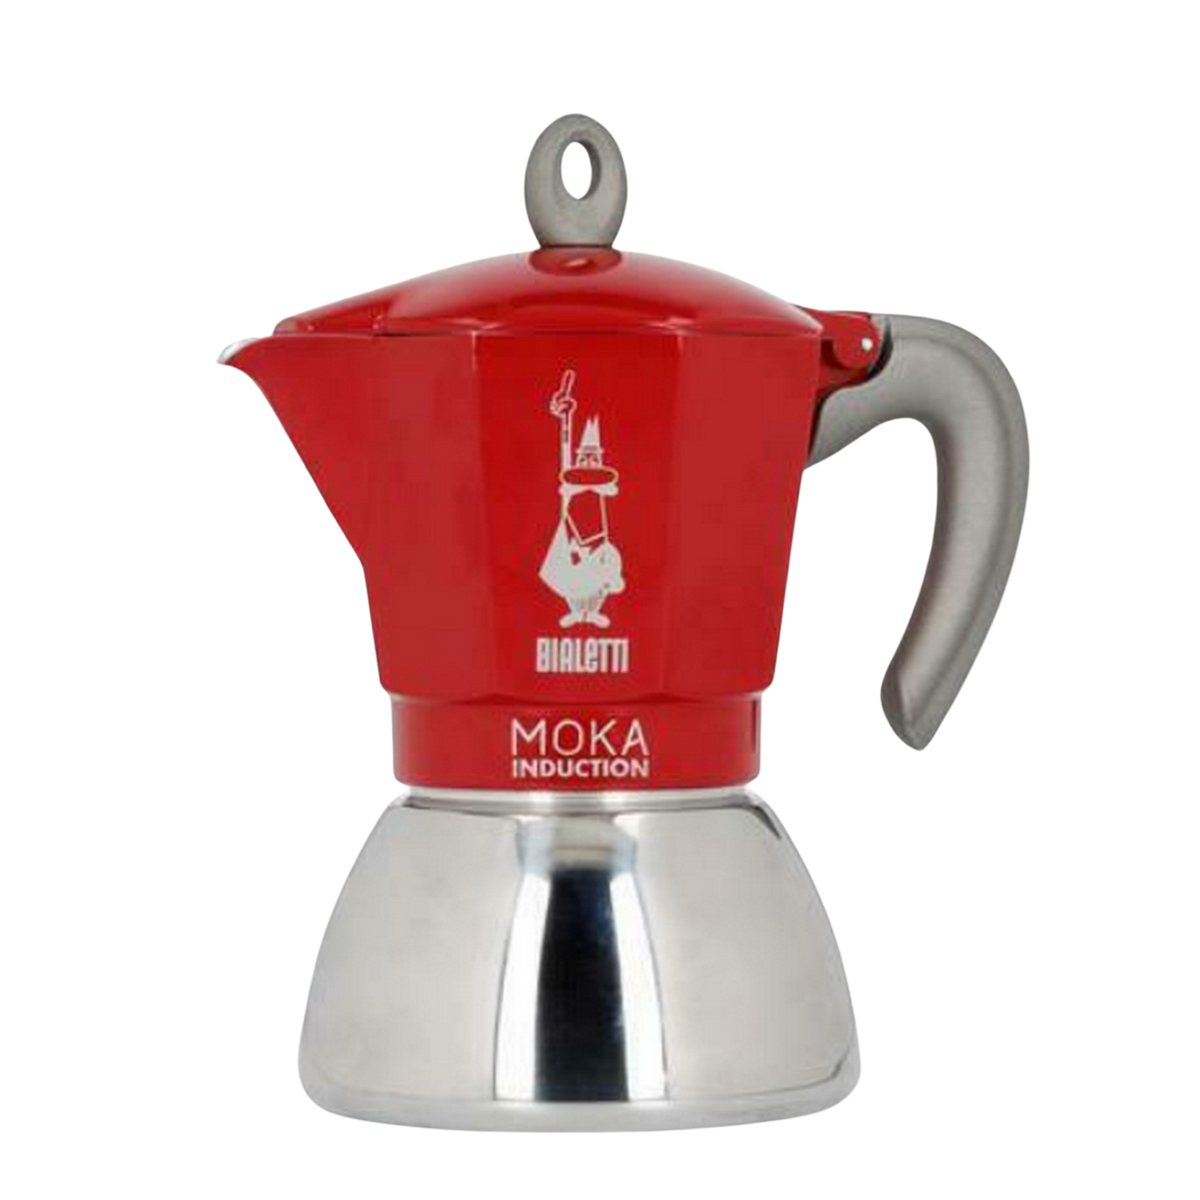 New Tassen für Moka RED Induction 4 Espressokocher BIALETTI Rot/Silber